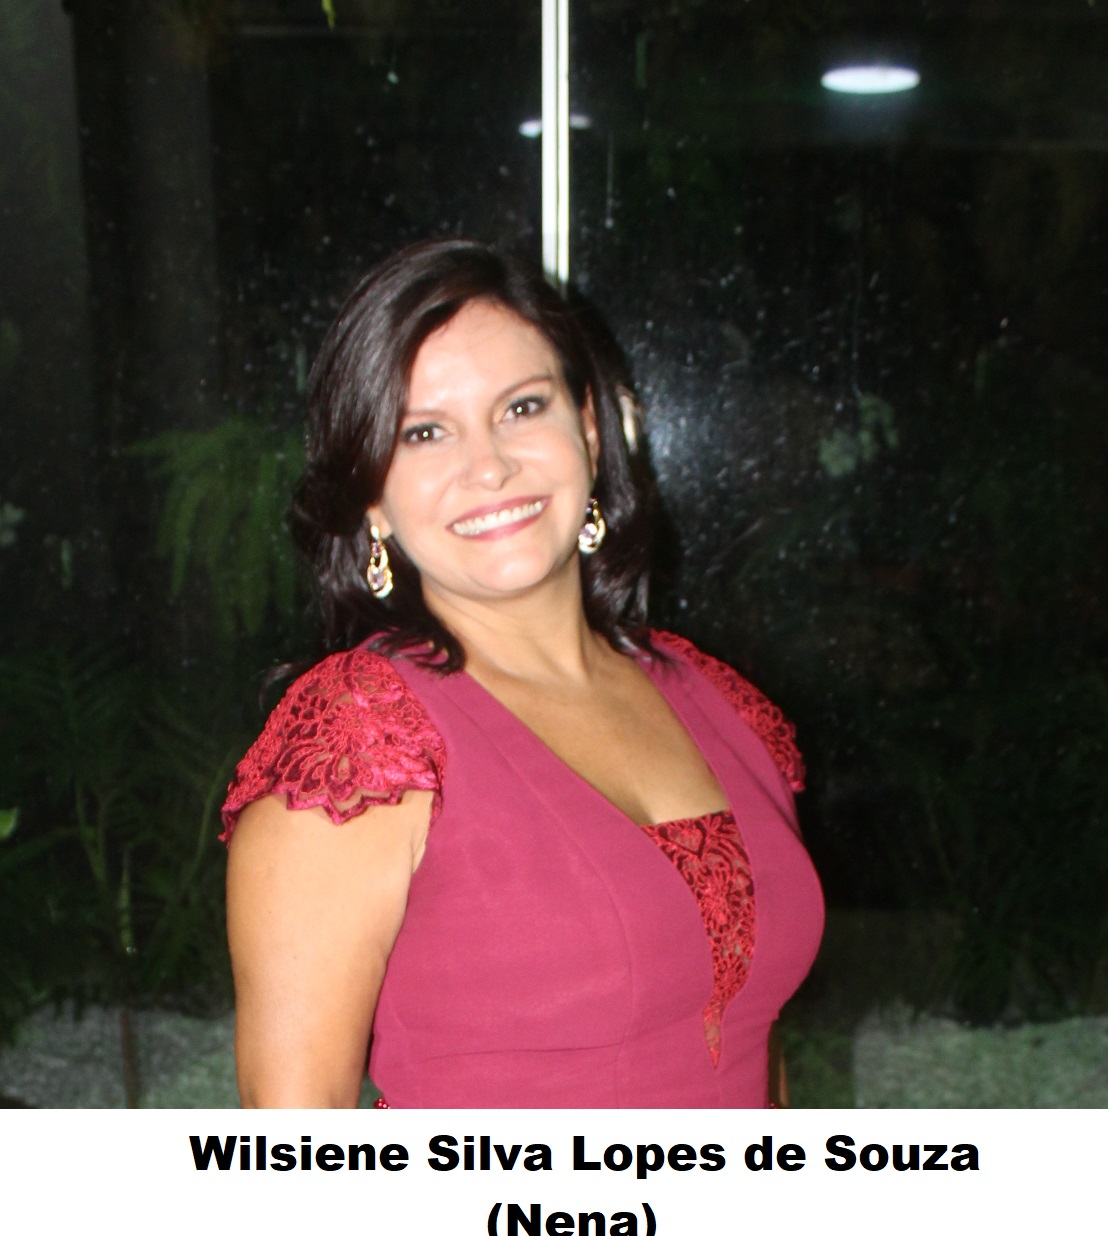 Faleceu no dia 05/03/2022, a Vereadora Wilsiene Silva Lopes de Souza (NENA)